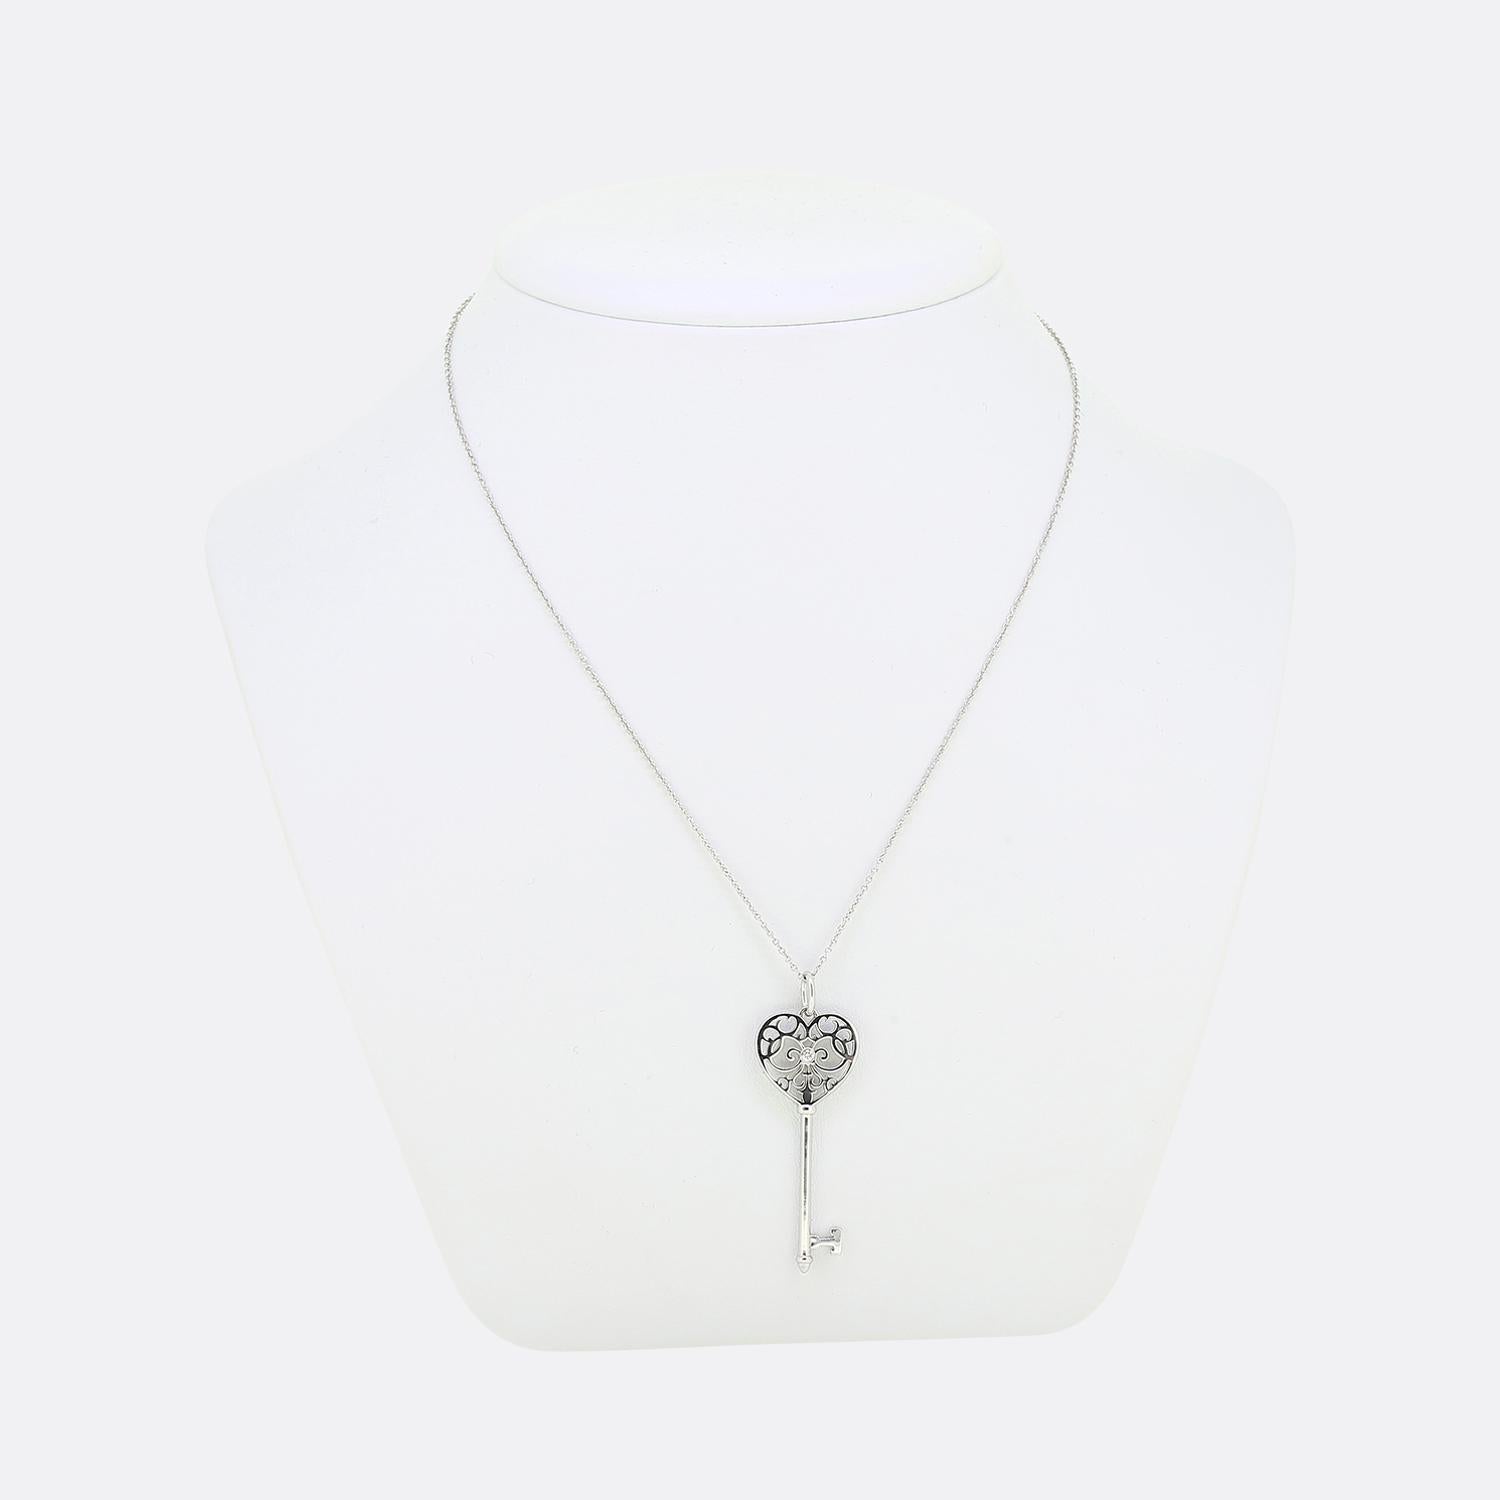 Nous avons ici un magnifique pendentif du créateur de bijoux de renommée mondiale, Tiffany & Co. Cette pièce en or blanc 18ct fait partie de la collection Tiffany Key et présente une tête ouverte ornée qui accueille un seul diamant rond de taille